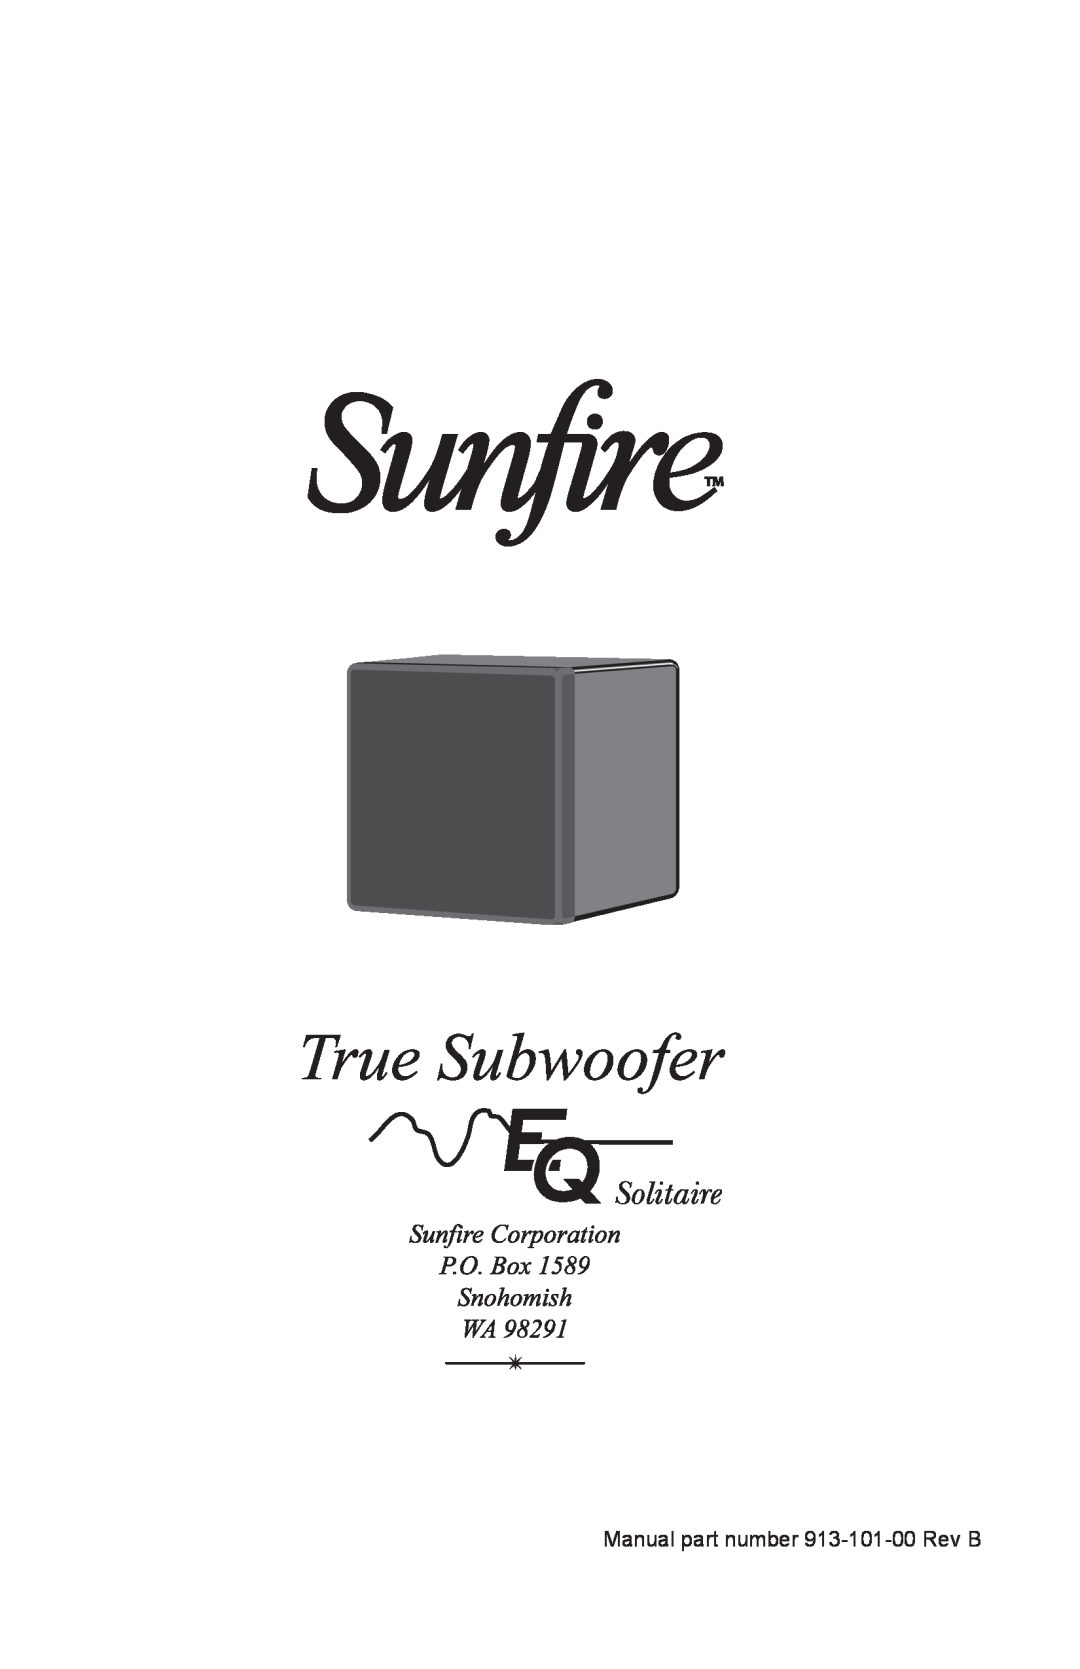 Sunfire Solitaire 10 user manual Manual part number 913-101-00Rev B 